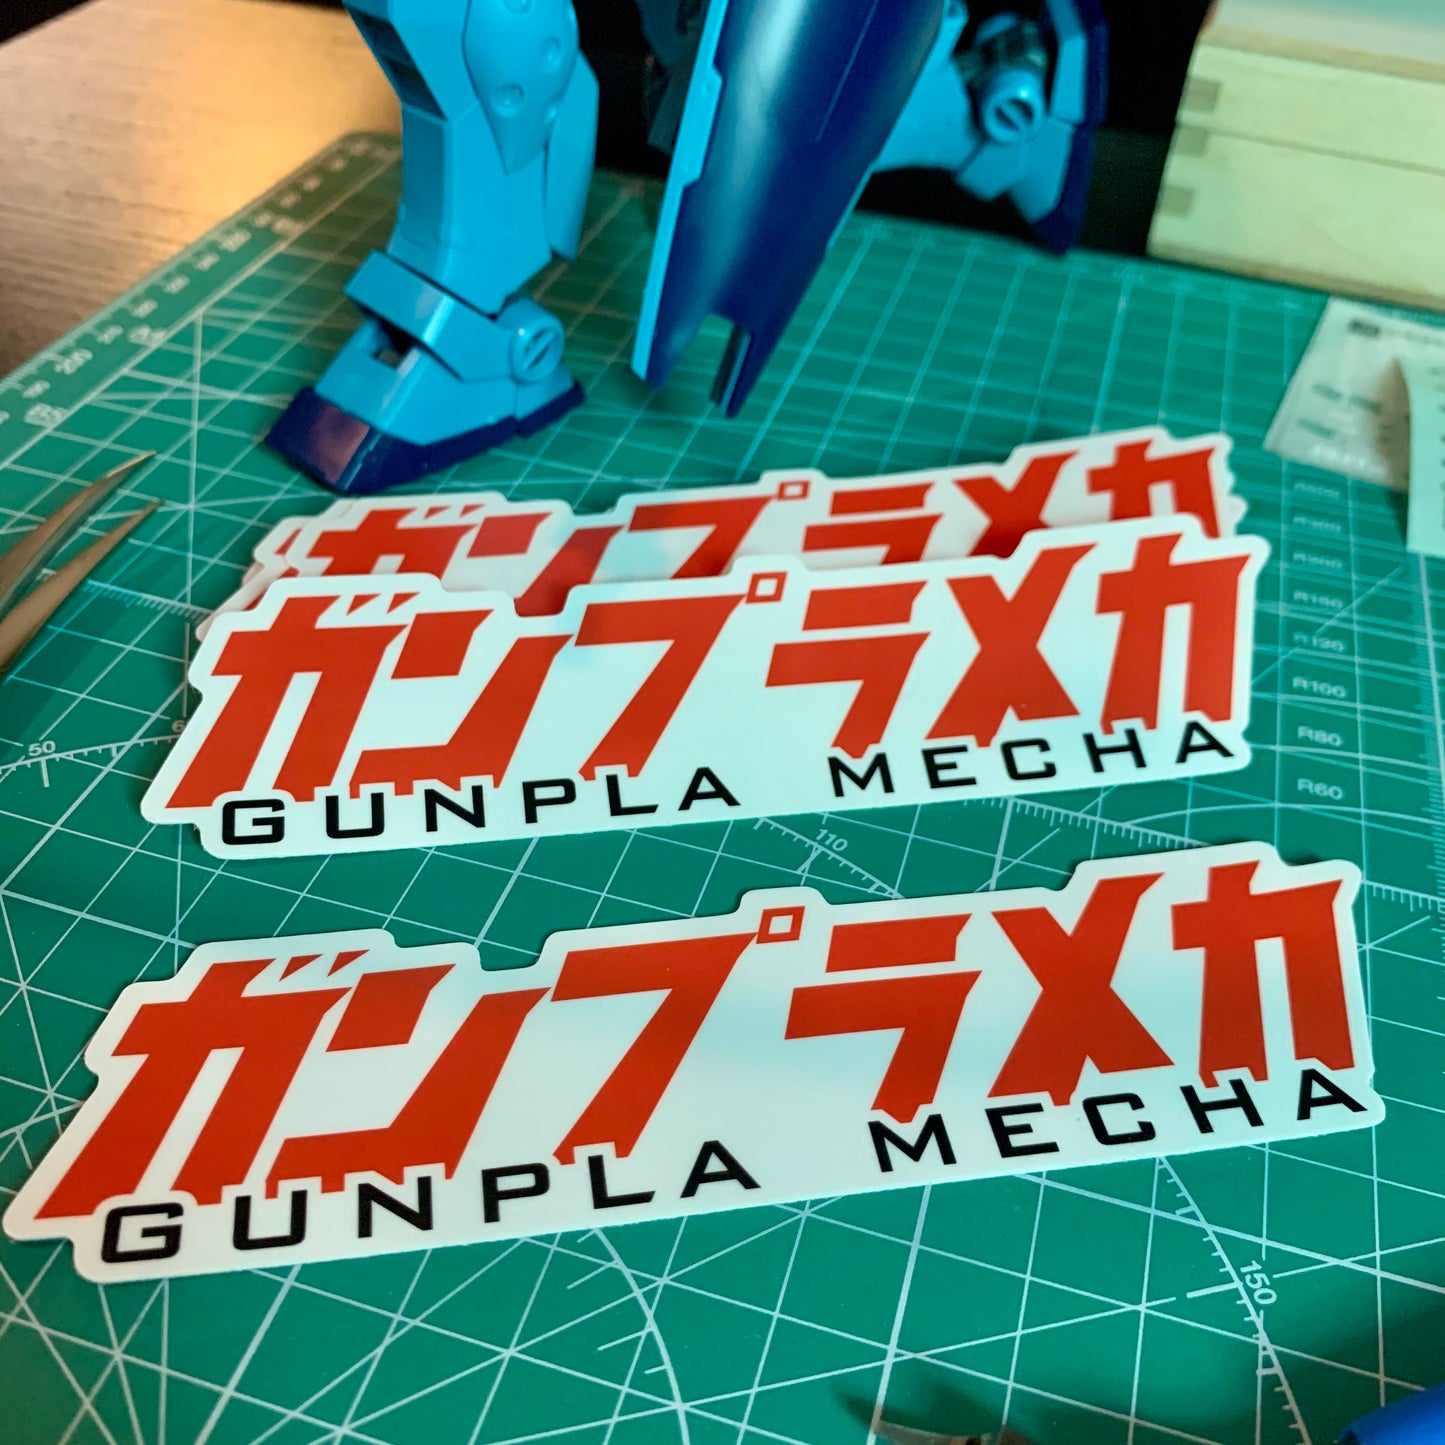 Gunpla Mecha Vinyl Sticker